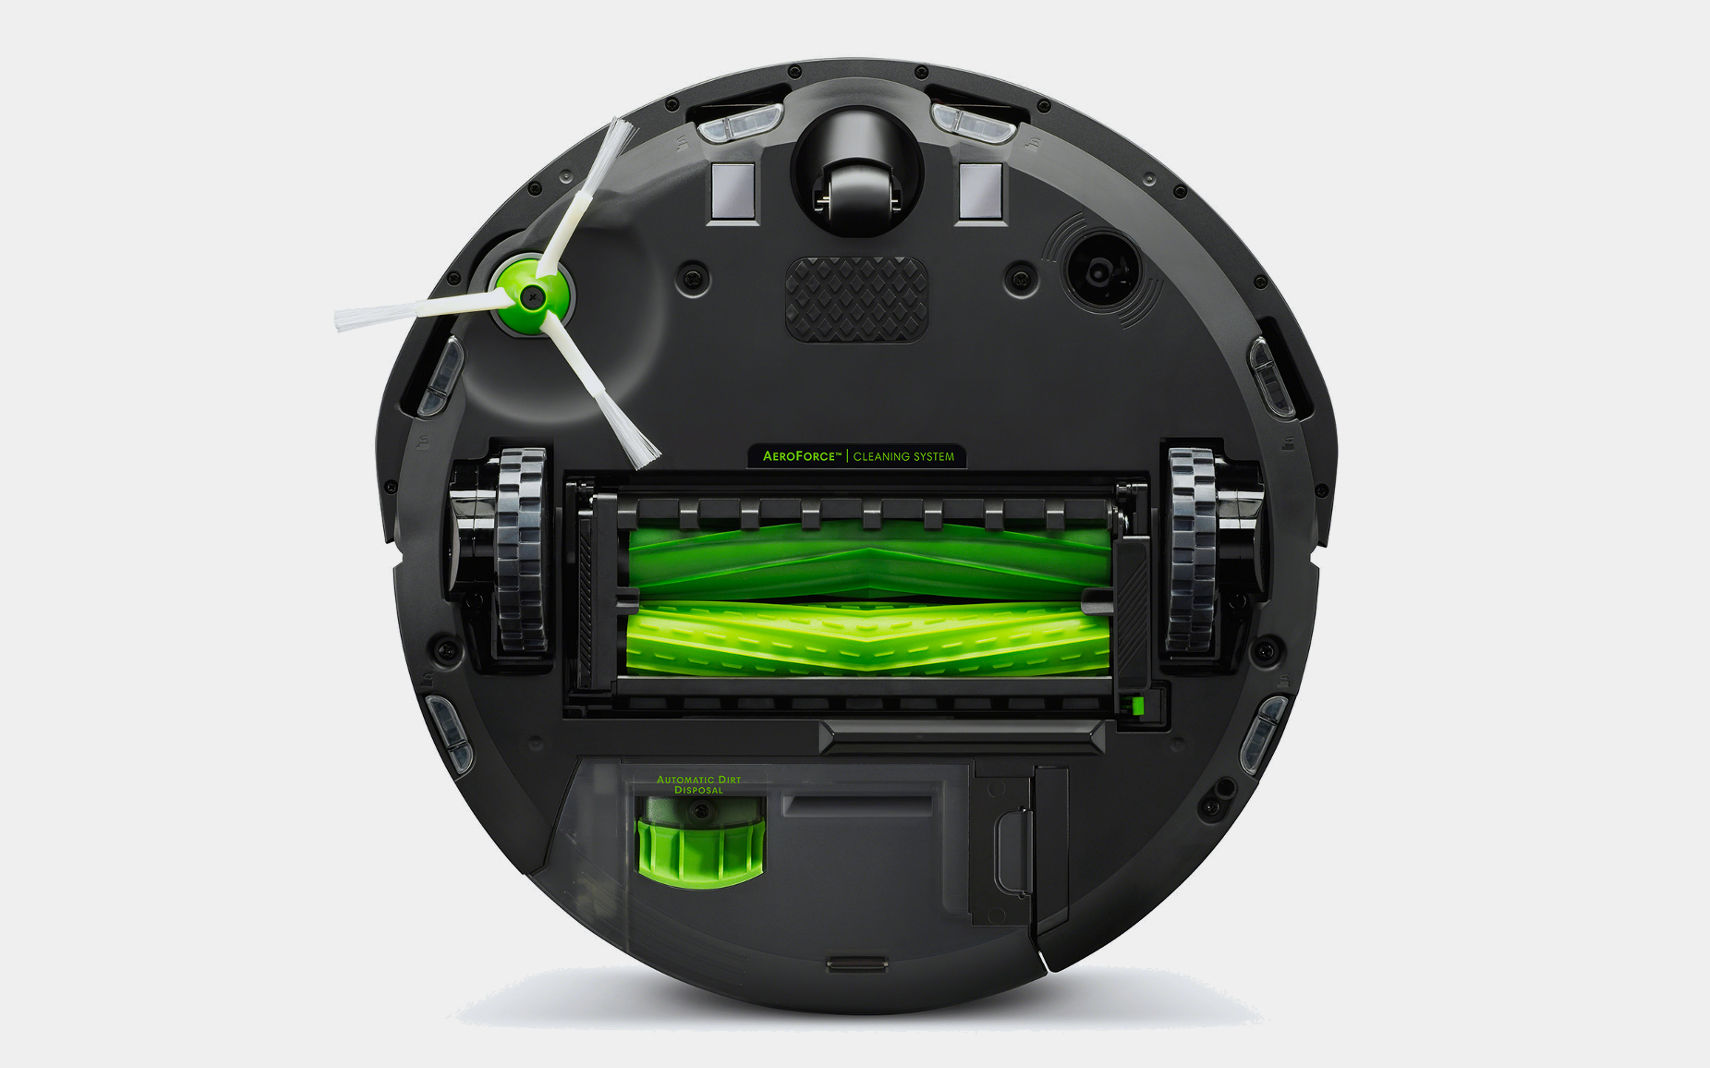 Irobot Roomba I7+ Vacuum